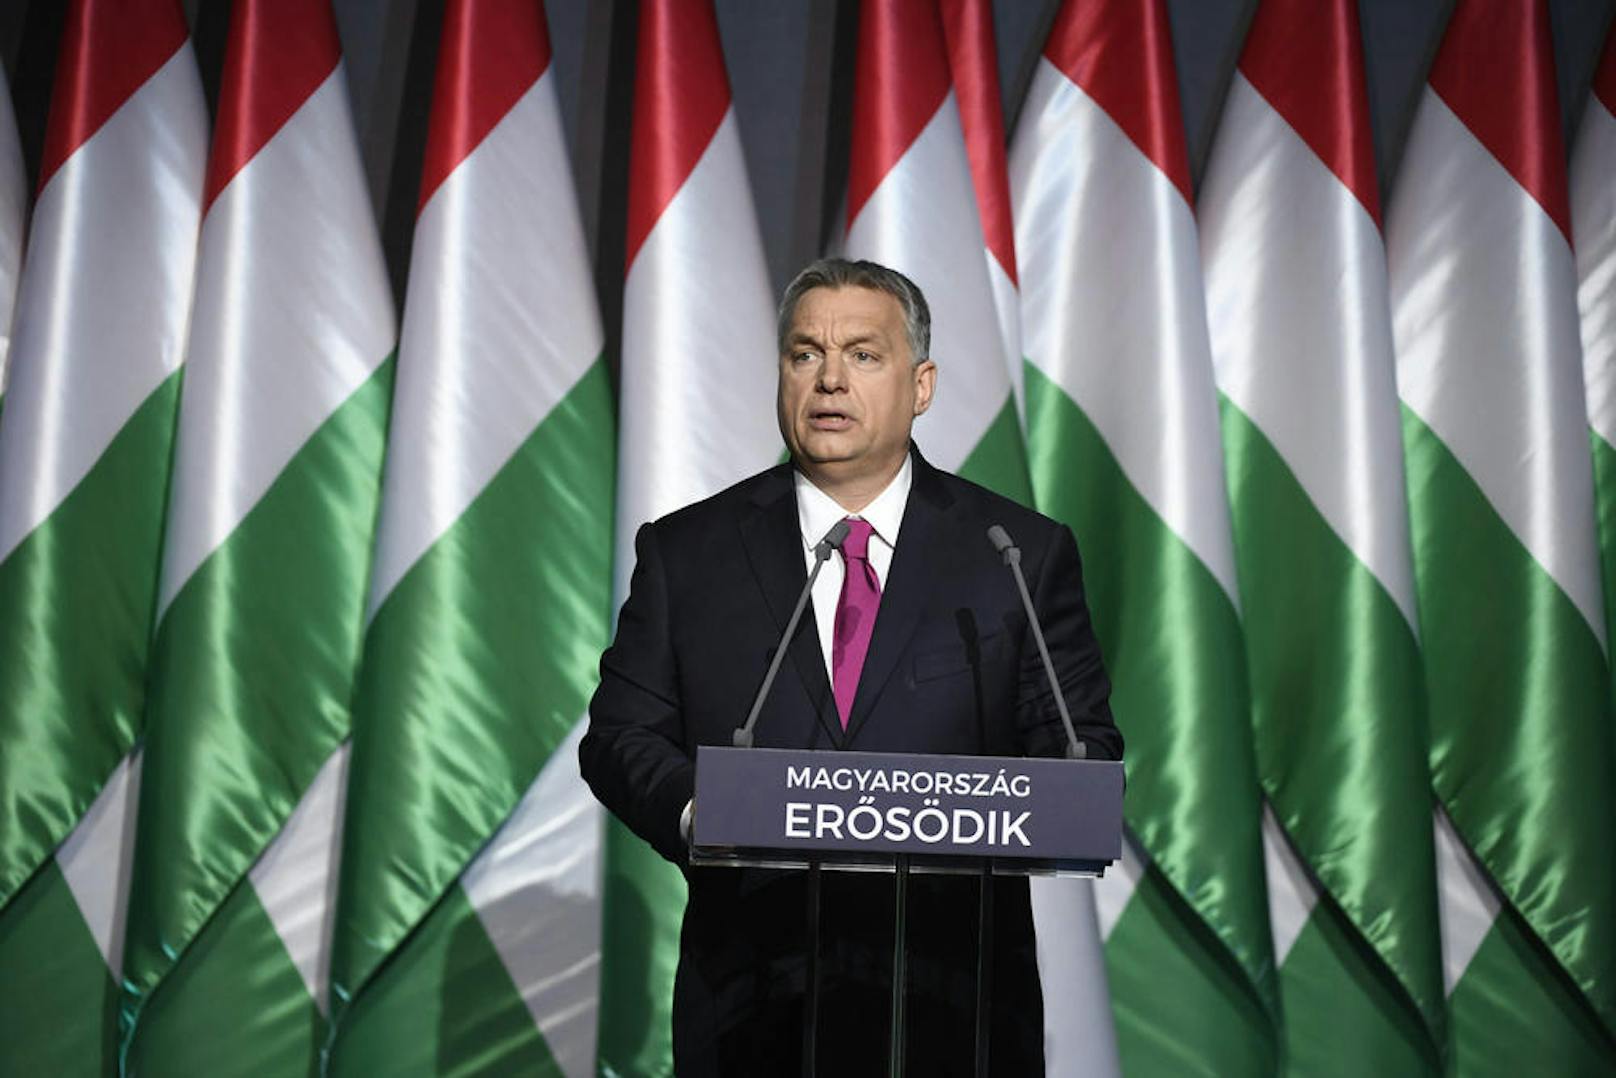 <b>April 2018: Parlamentswahlen in Ungarn</b>
Spannend auch der April: Da sollten die Parlamentswahlen in unserem Nachbarland Ungarn stattfinden. Schafft es Viktor Orban wieder an die Staatsspitze?